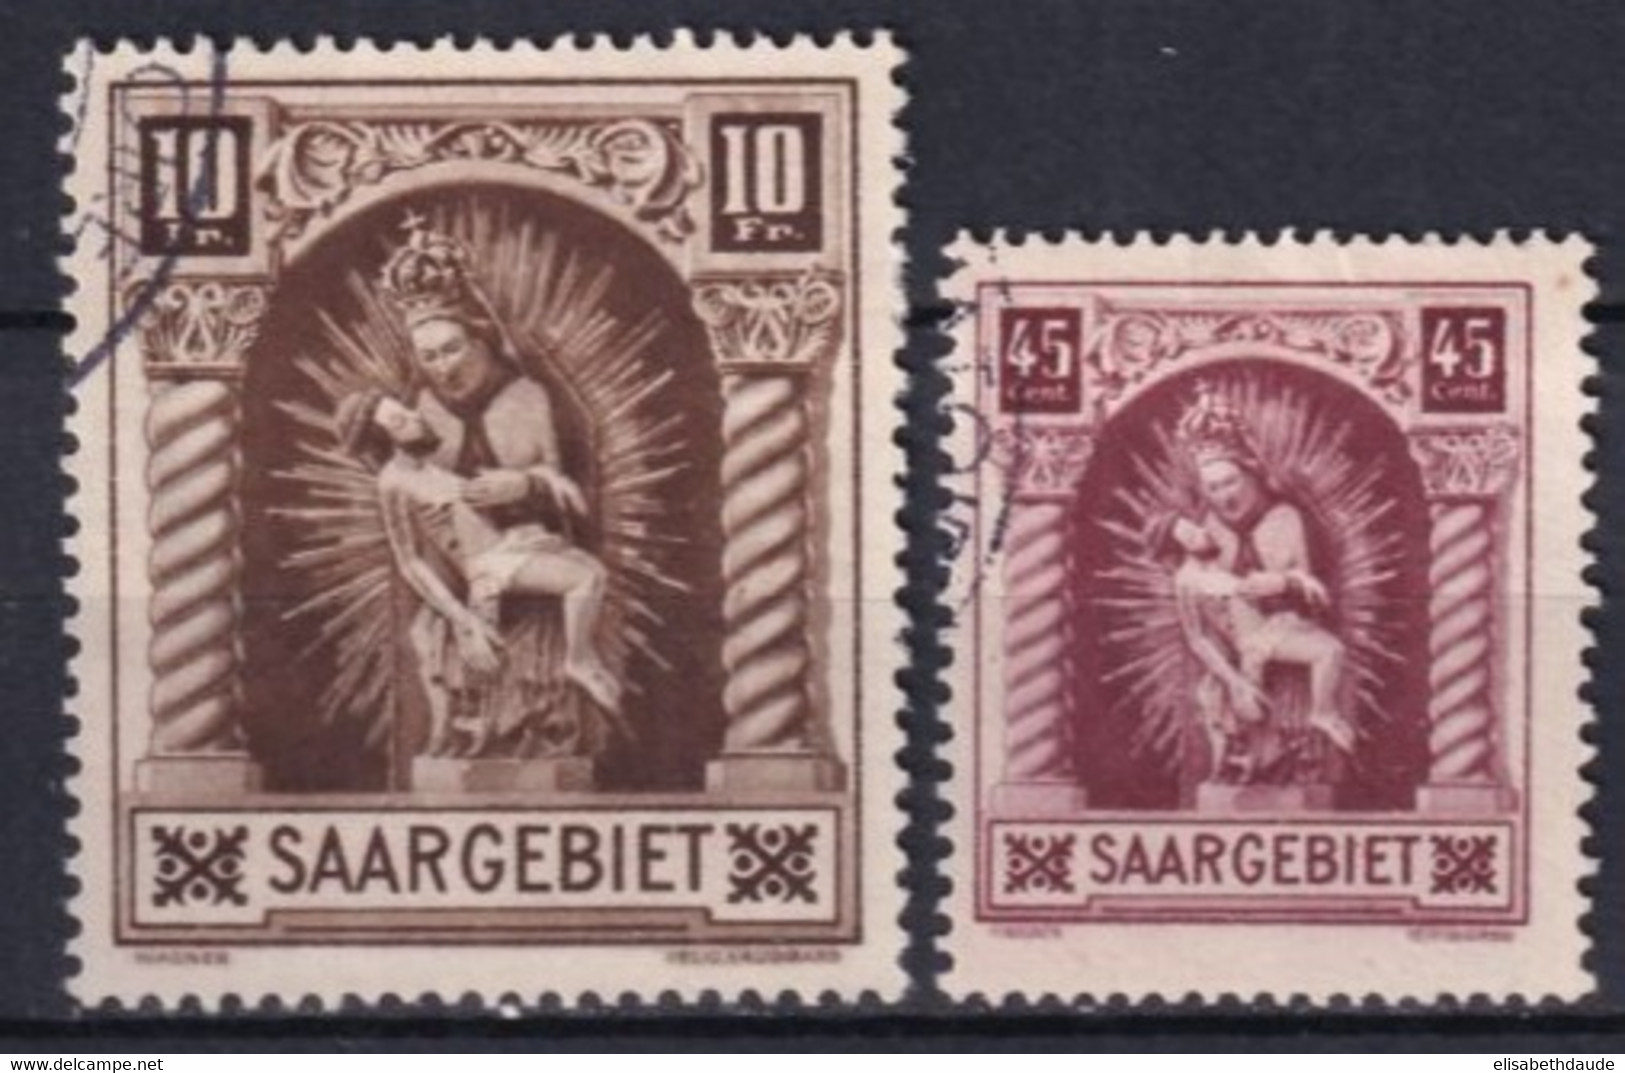 SAAR / SARRE - 1925 - YT N° 101/102 OBLITERES - COTE = 42 EUR. - Gebraucht